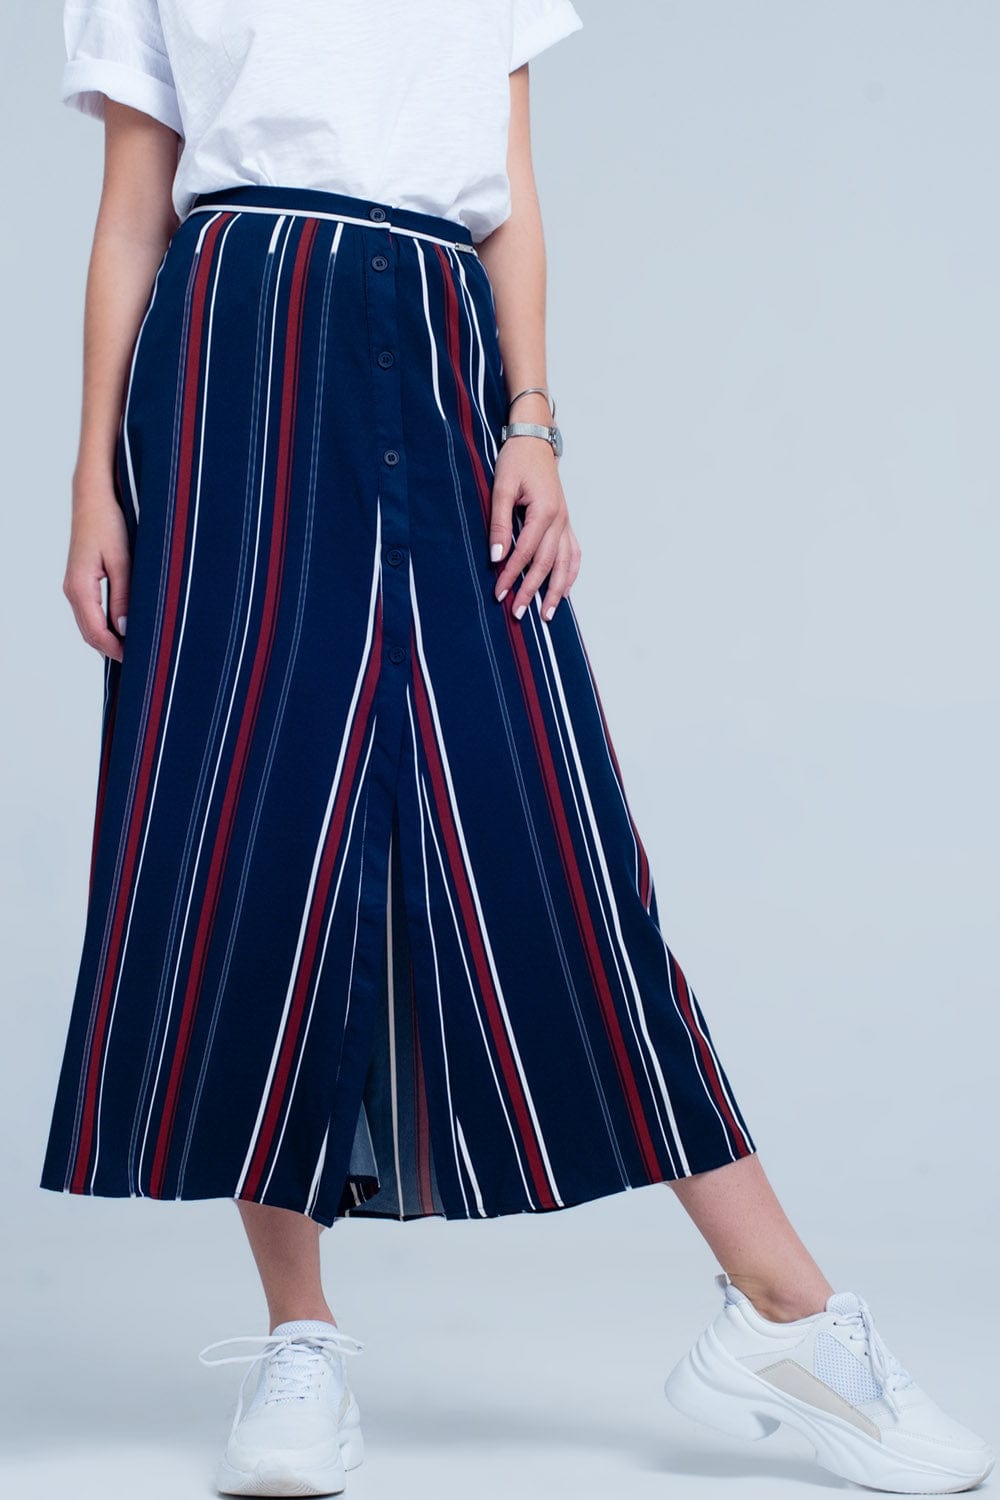 Q2 Women's Skirt Navy blue striped midi skirt